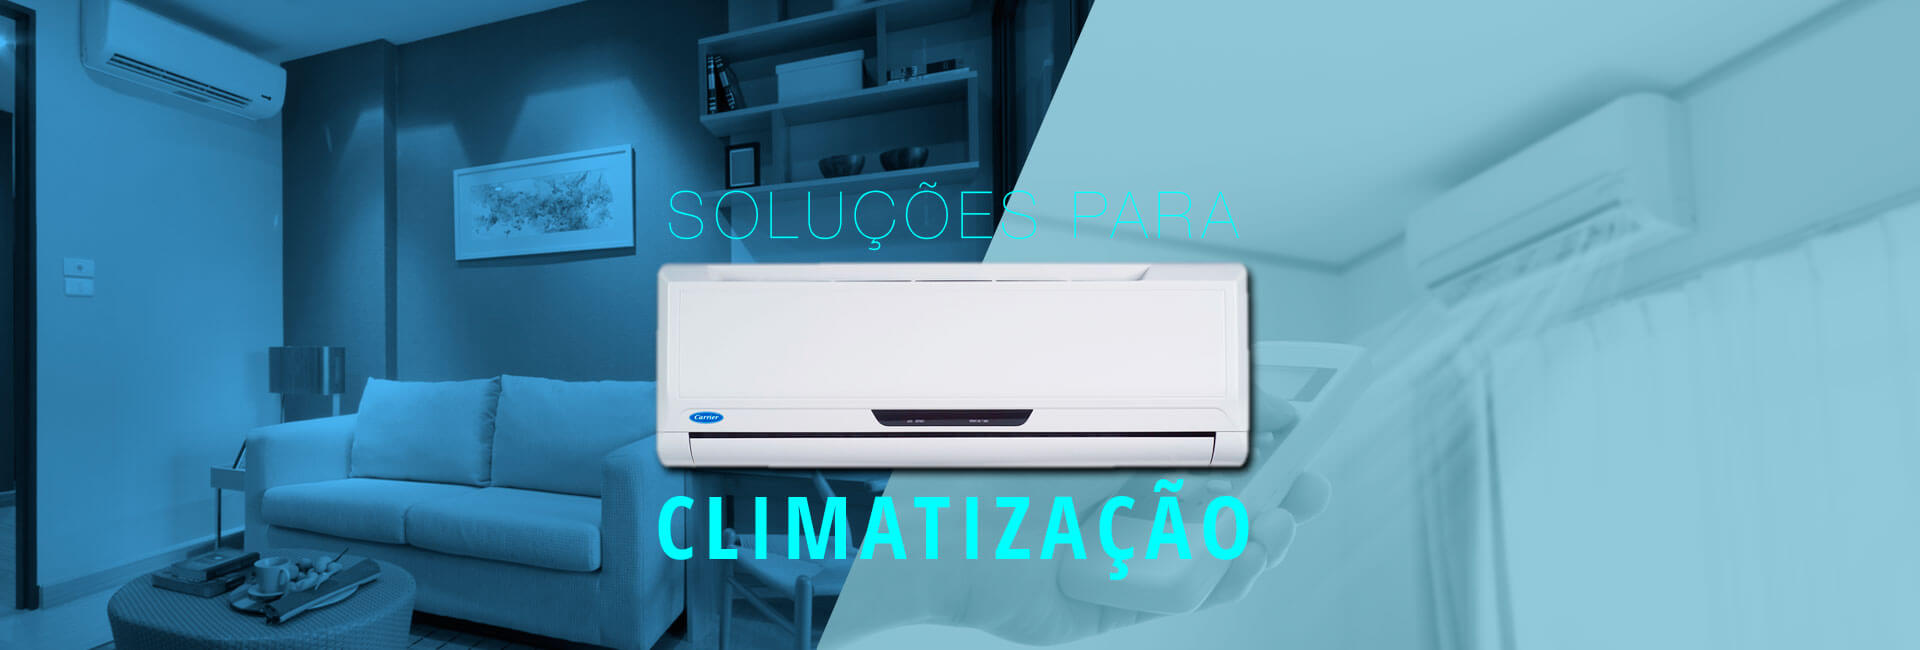 Soluções para climatização Curitiba - Via Serv